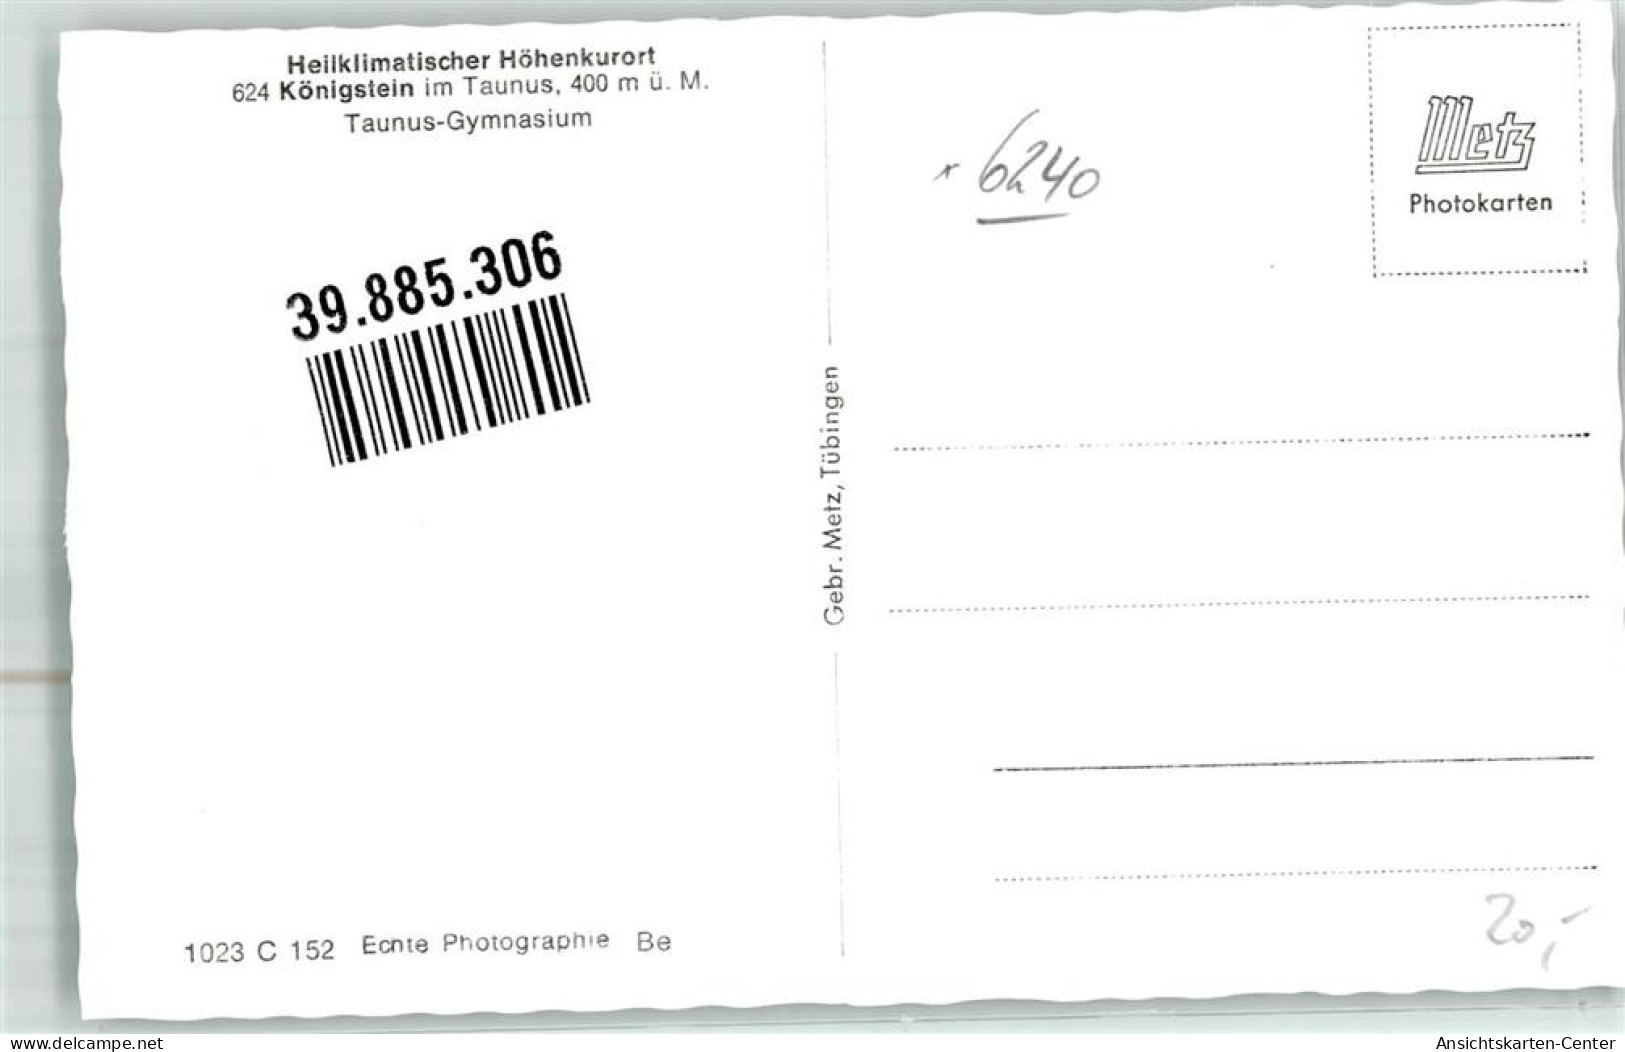 39885306 - Koenigstein Im Taunus - Königstein